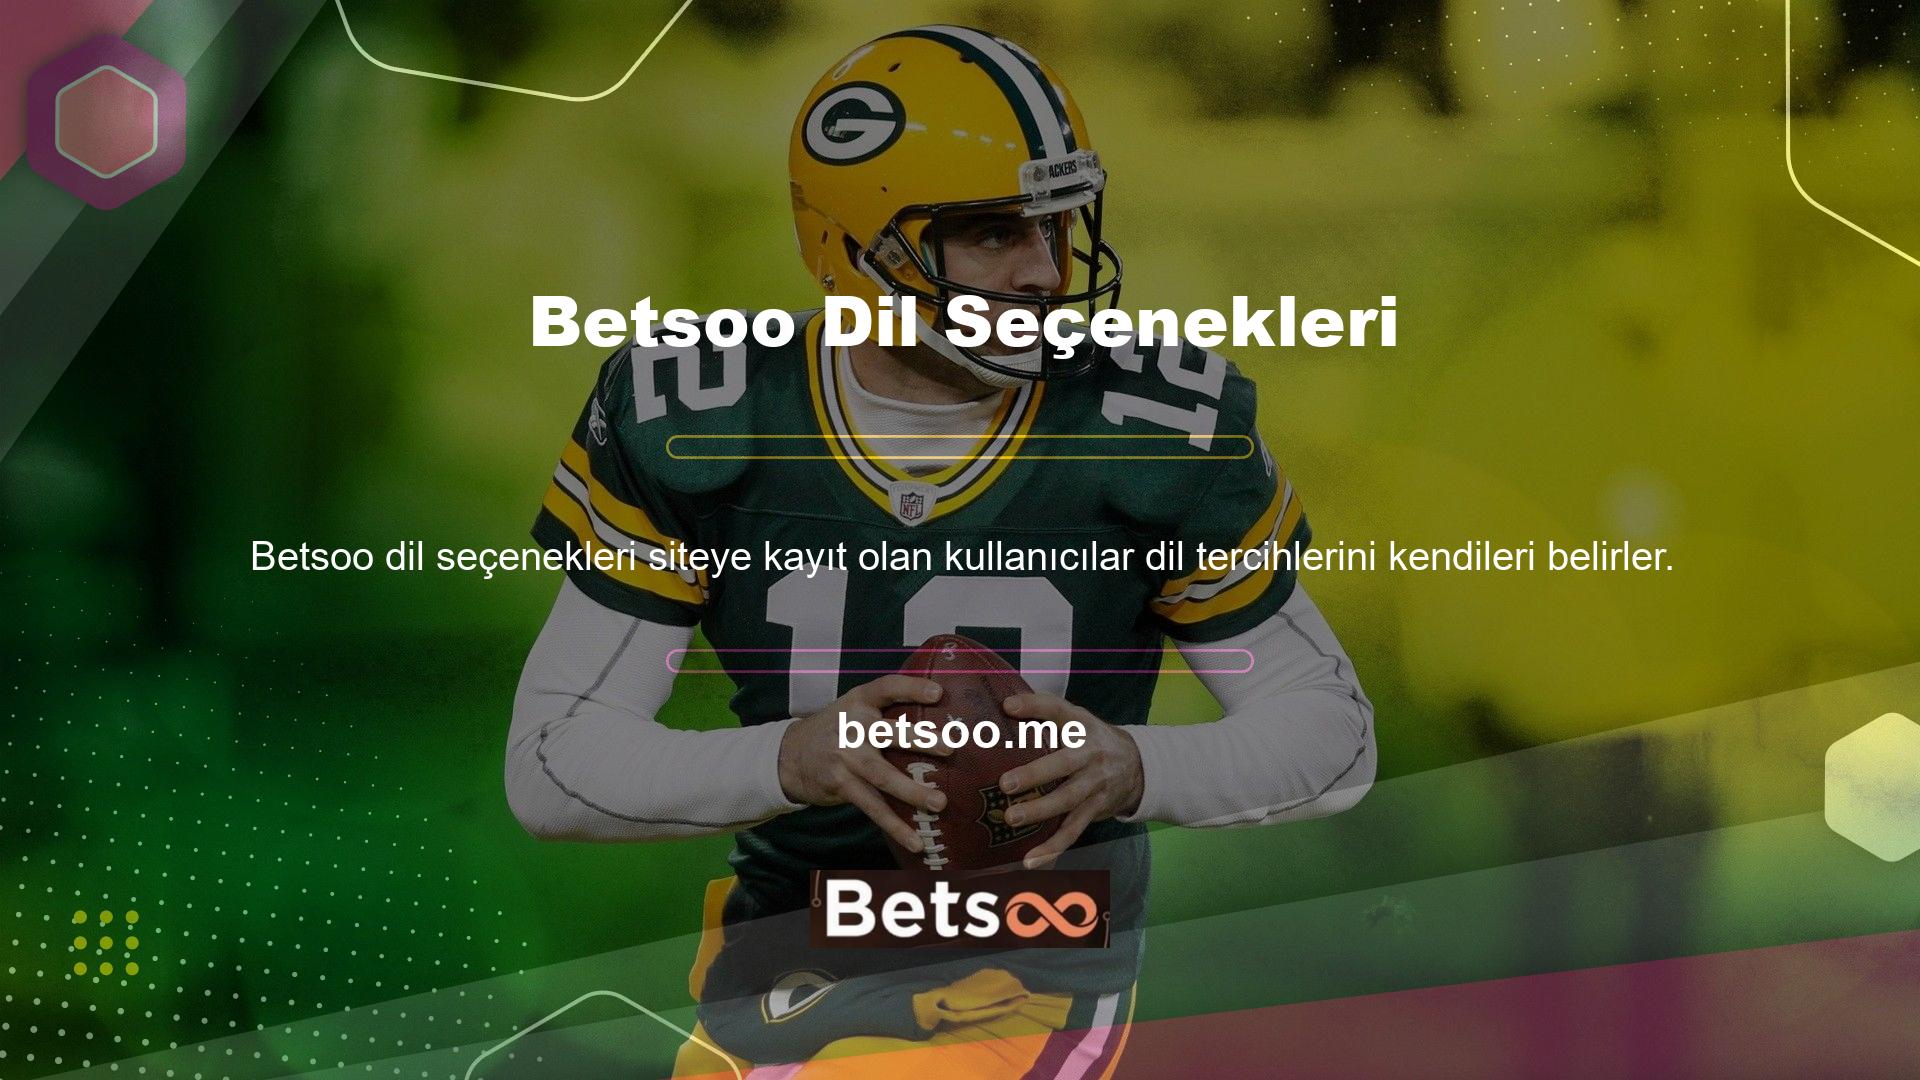 Betsoo web sitesini sağ üst köşedeki dil seçeneklerinden dilediğiniz dili seçerek kullanabilirsiniz